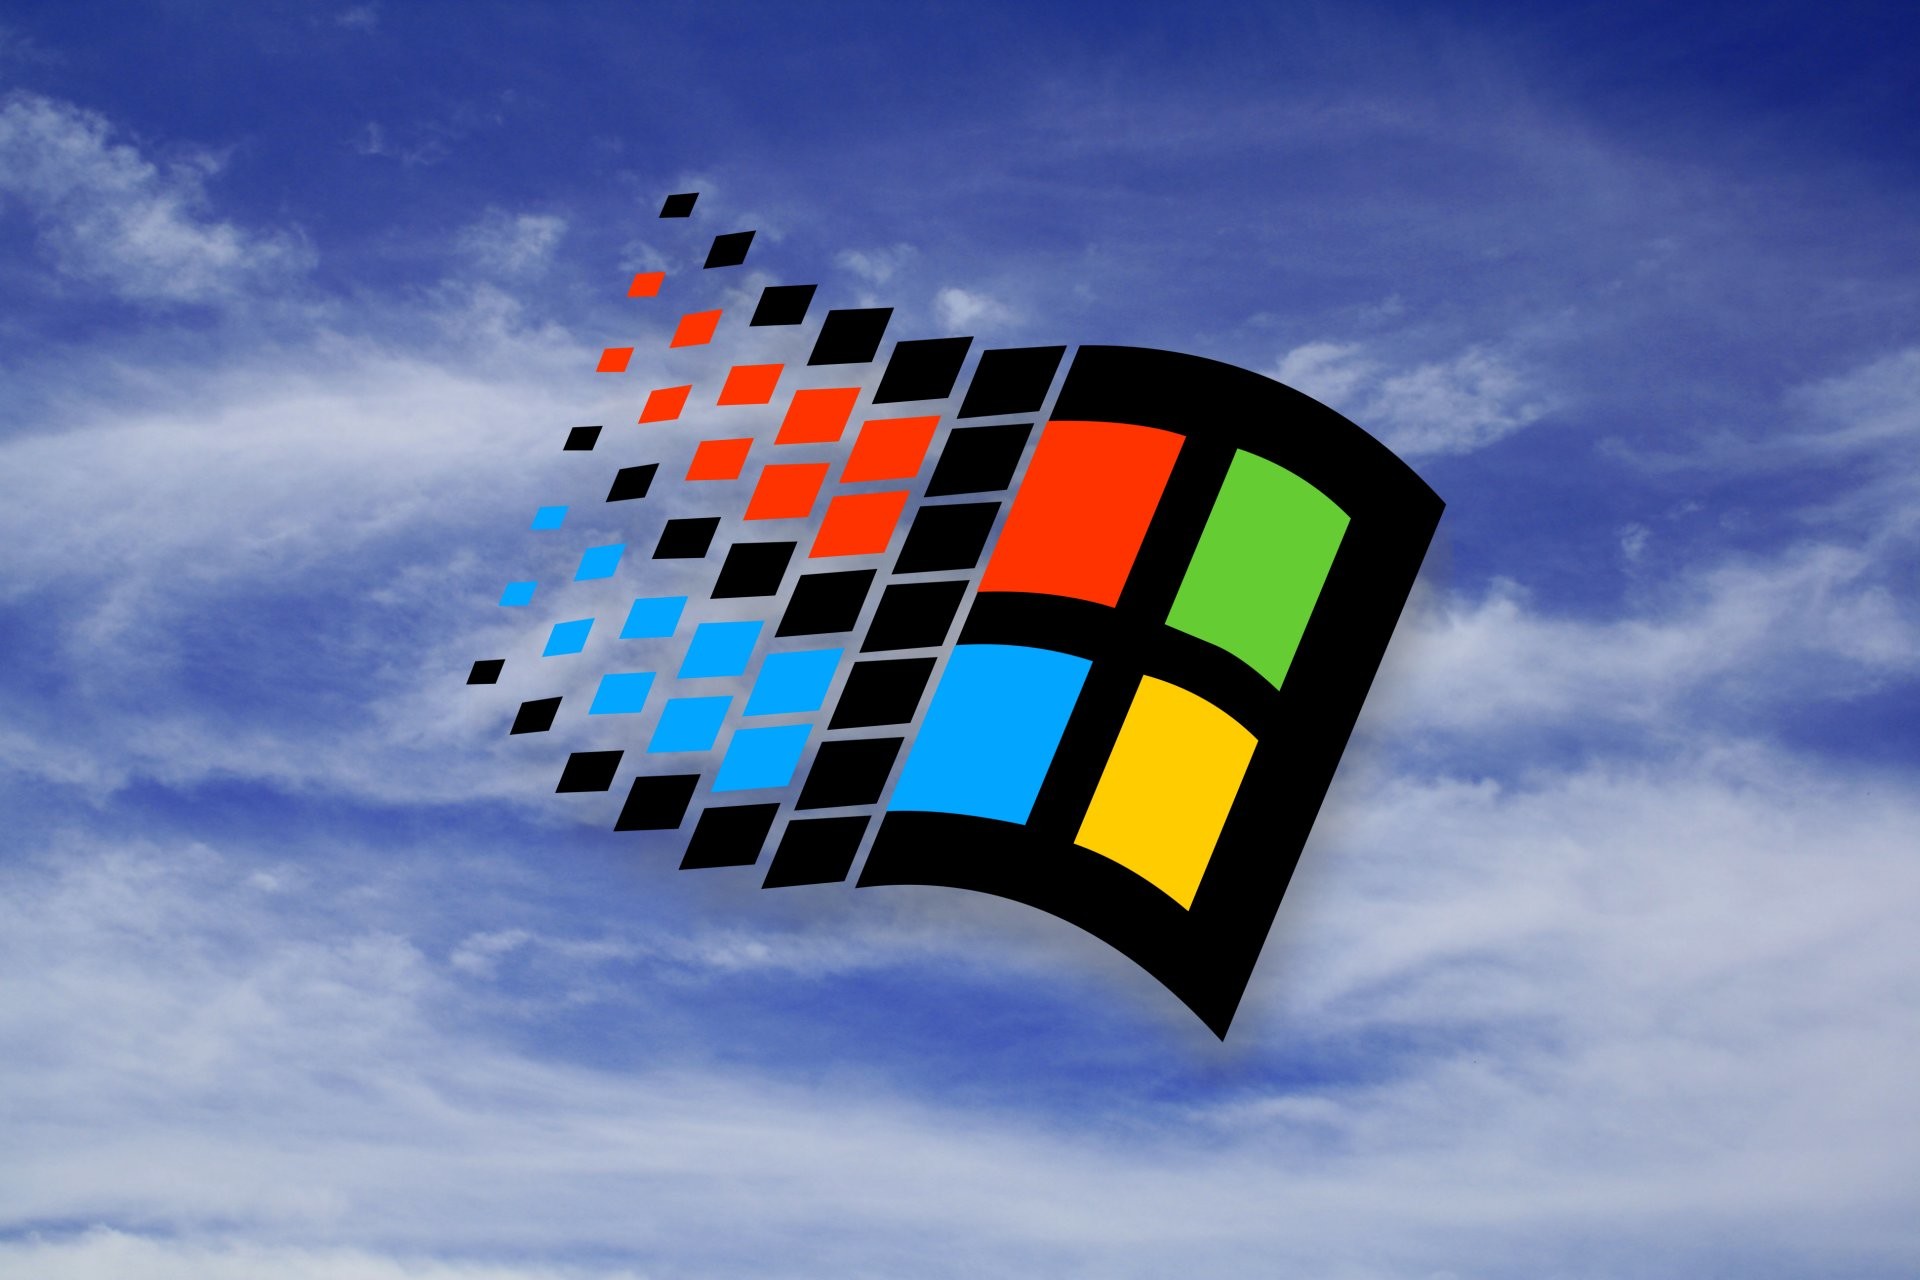 fond d'écran windows 95,rubik's cube,ciel,graphique,jouet